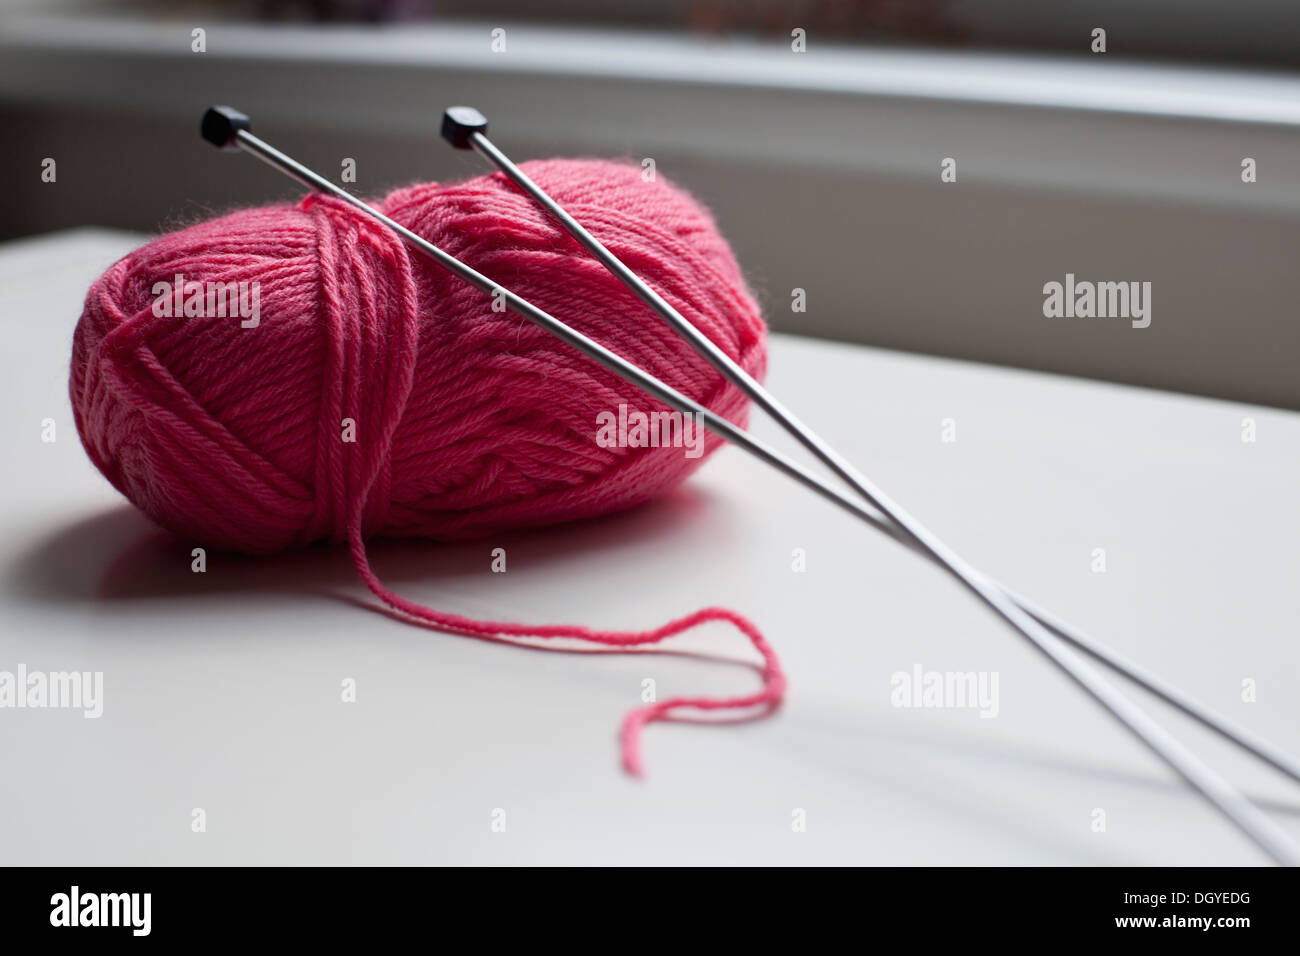 Une pelote de laine avec une paire d'aiguilles à tricoter pour se pencher sur elle Banque D'Images